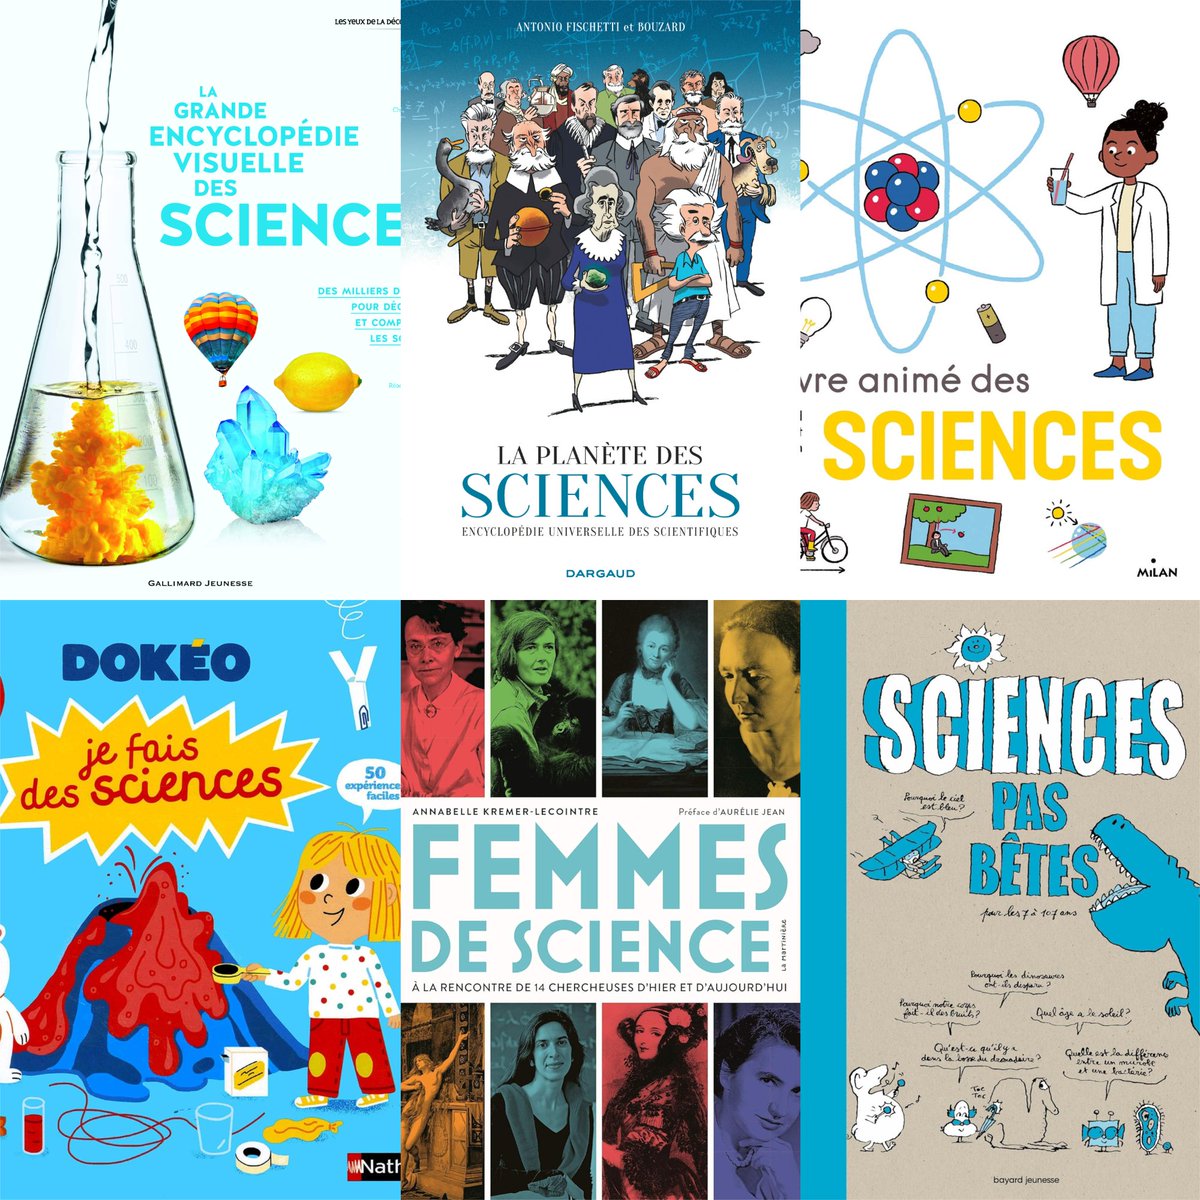 Découvrez notre sélection des meilleurs livres pour initier les enfants à la science !😍🚸📚 ⚗️ 📖 🔬

Lire l'article👉urlz.fr/pZR4

#culturadvisor #culture #livres #lecture #lire #enfants #familles #éducation #apprentissage #science #sélection #recommandations